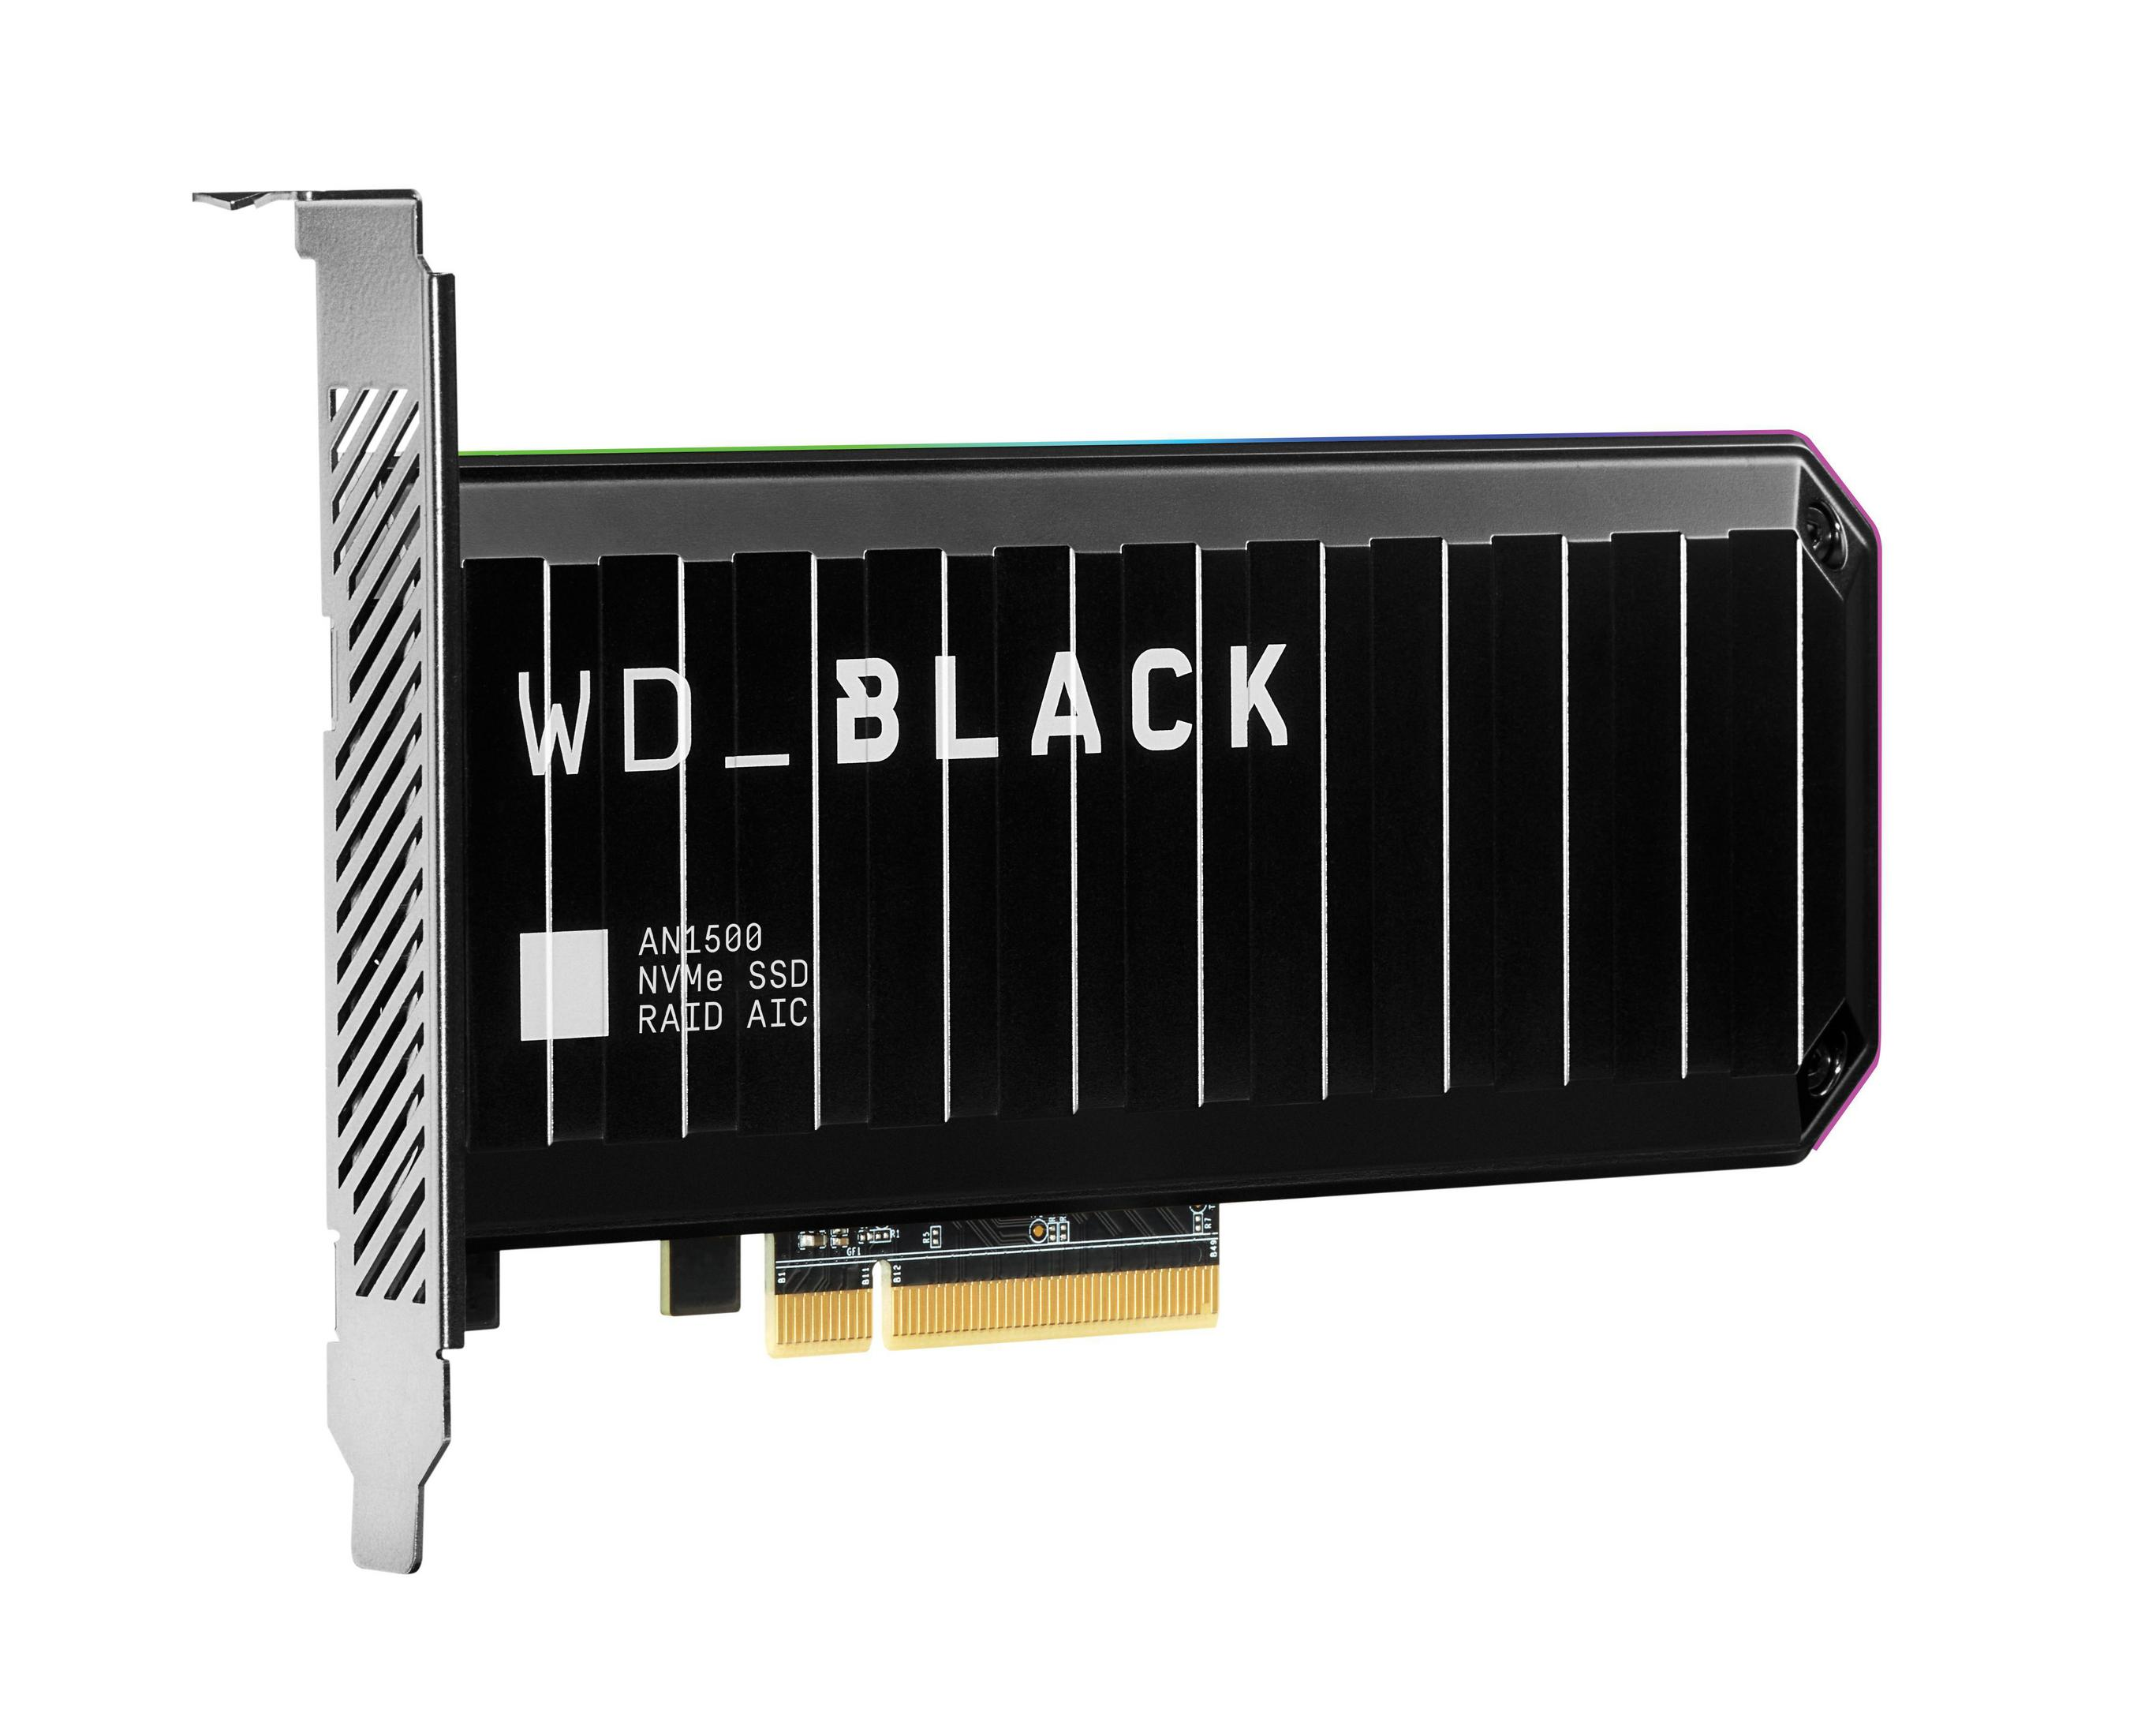 1TB, SSD, intern BLACK AN1500 TB, WD WD PCIE WDS100T1X0L 1